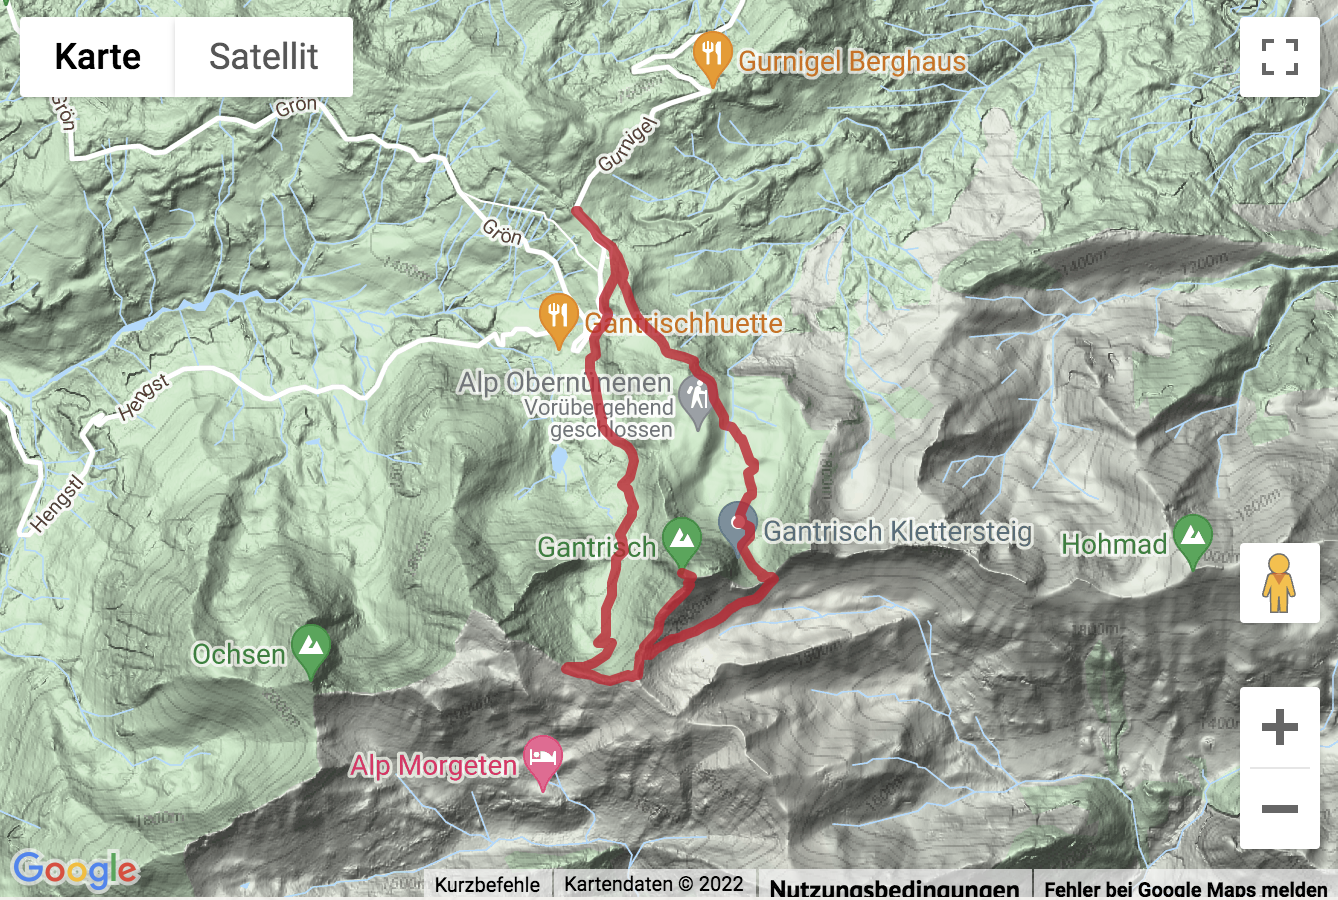 Carte de situation avec l'itinéraire pour la Randonnée du sommet du Gurnigel au Gantrisch (2'175 m)